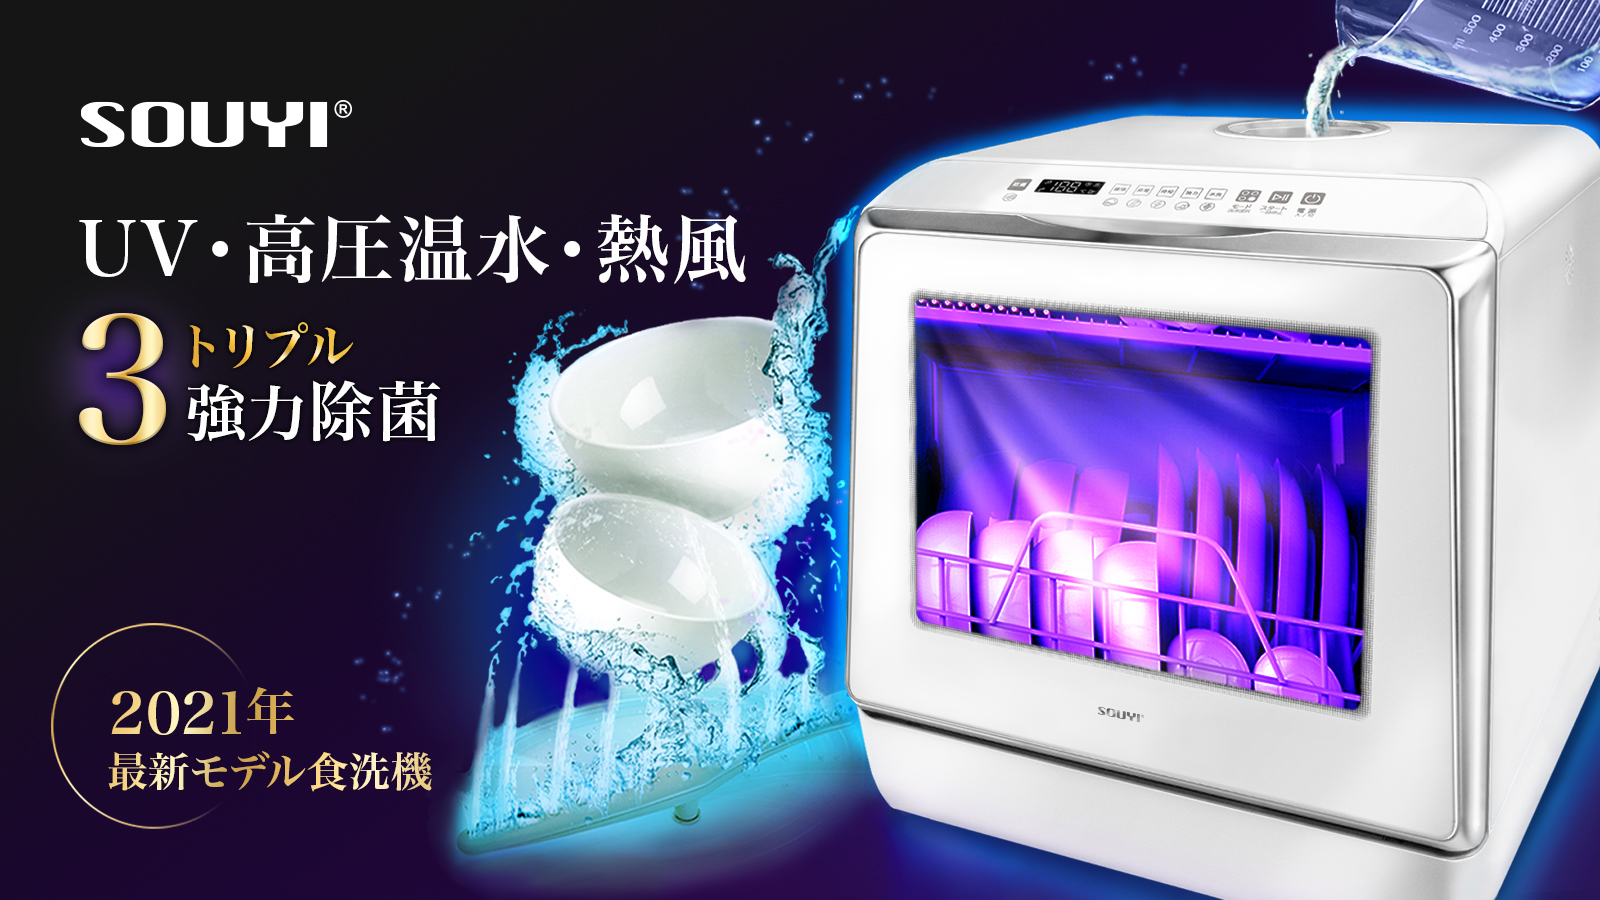 大特価・展示品 SOUYI 食器洗い乾燥機UV機能付き UV・高圧温水・熱風 強力除菌 UV機能付きコンパクト食洗器 省エネ 節水 マクアケ 食器洗い 乾燥機